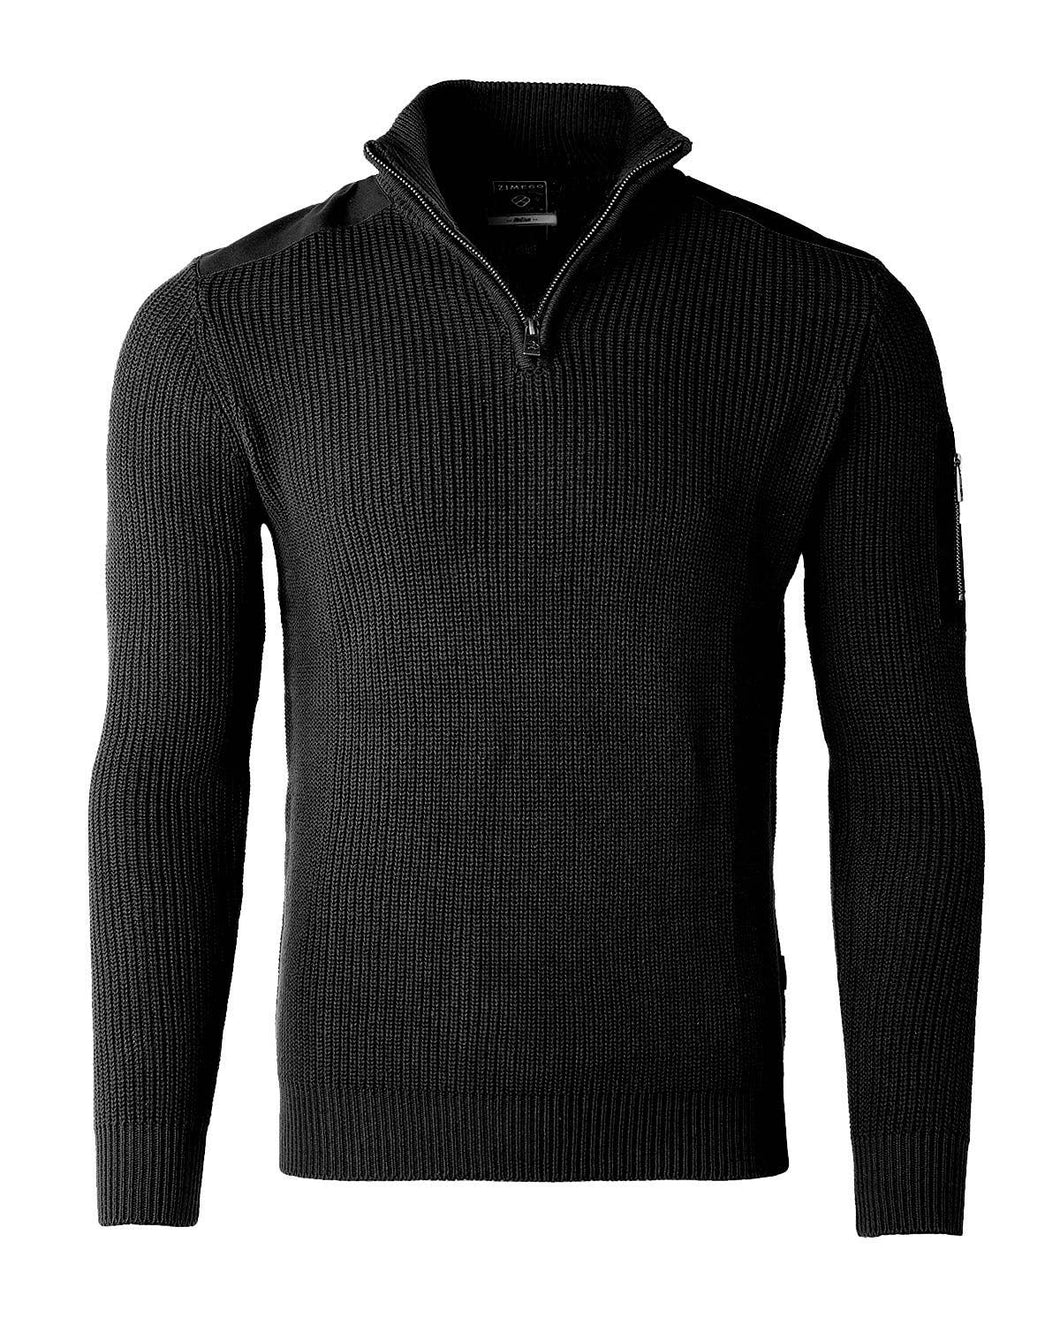 Men's Black Zip Up Sweater